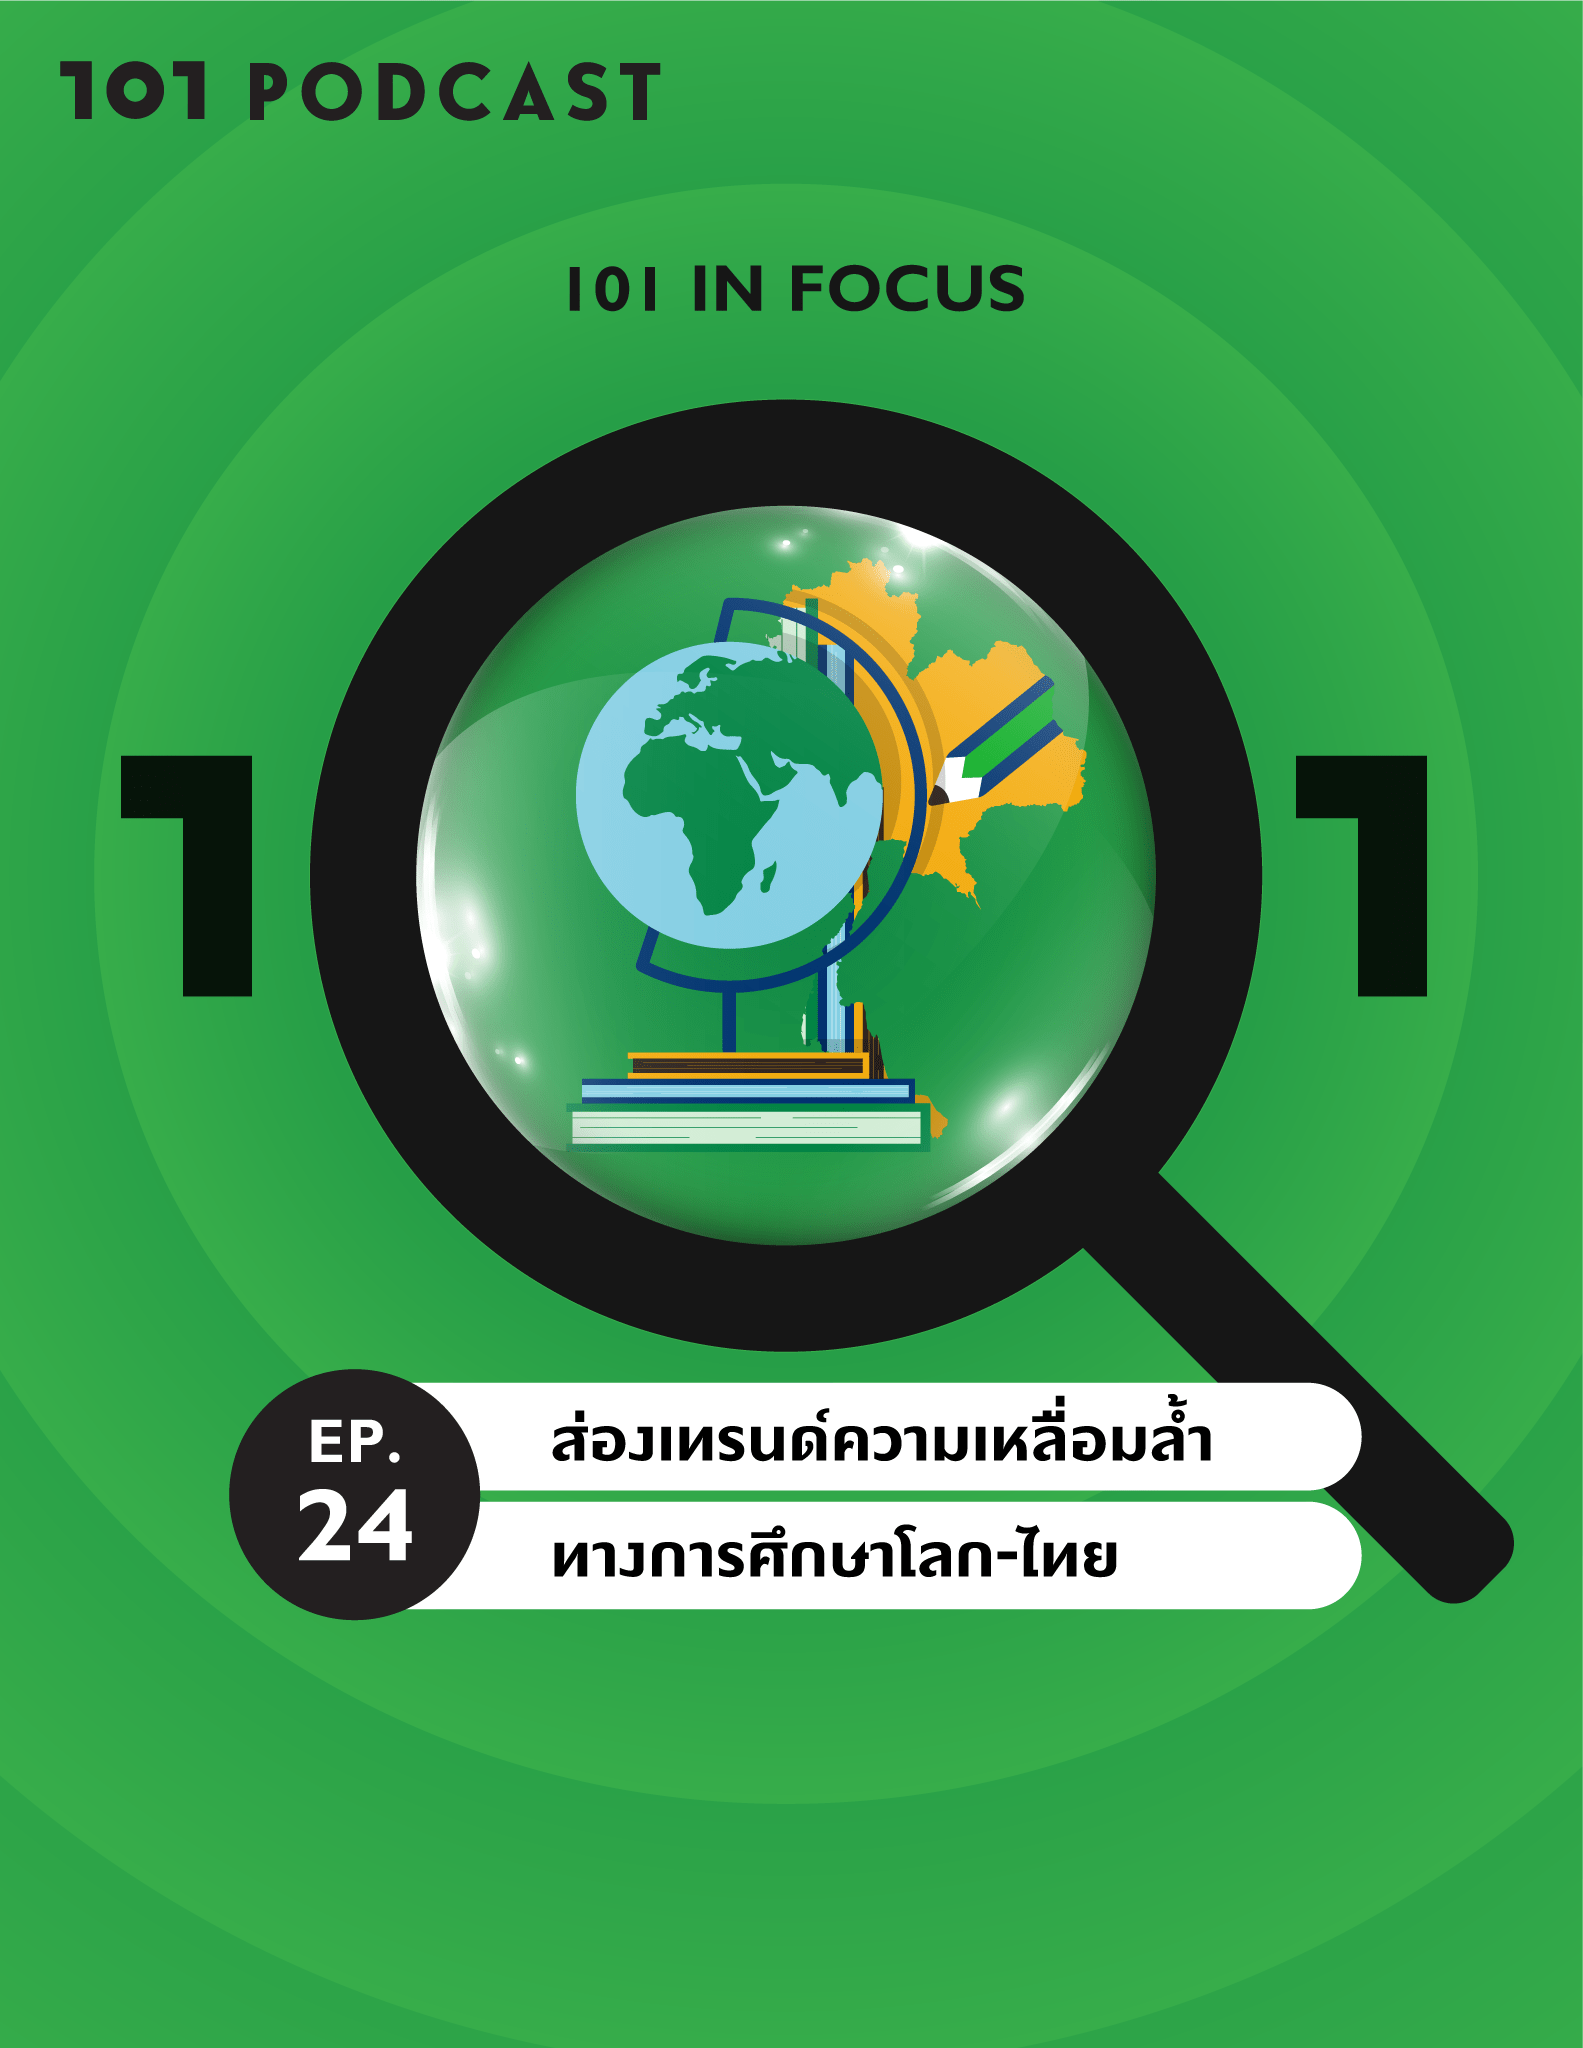 101 In Focus Ep.24 : ส่องเทรนด์ความเหลื่อมล้ำทางการศึกษาโลก-ไทย